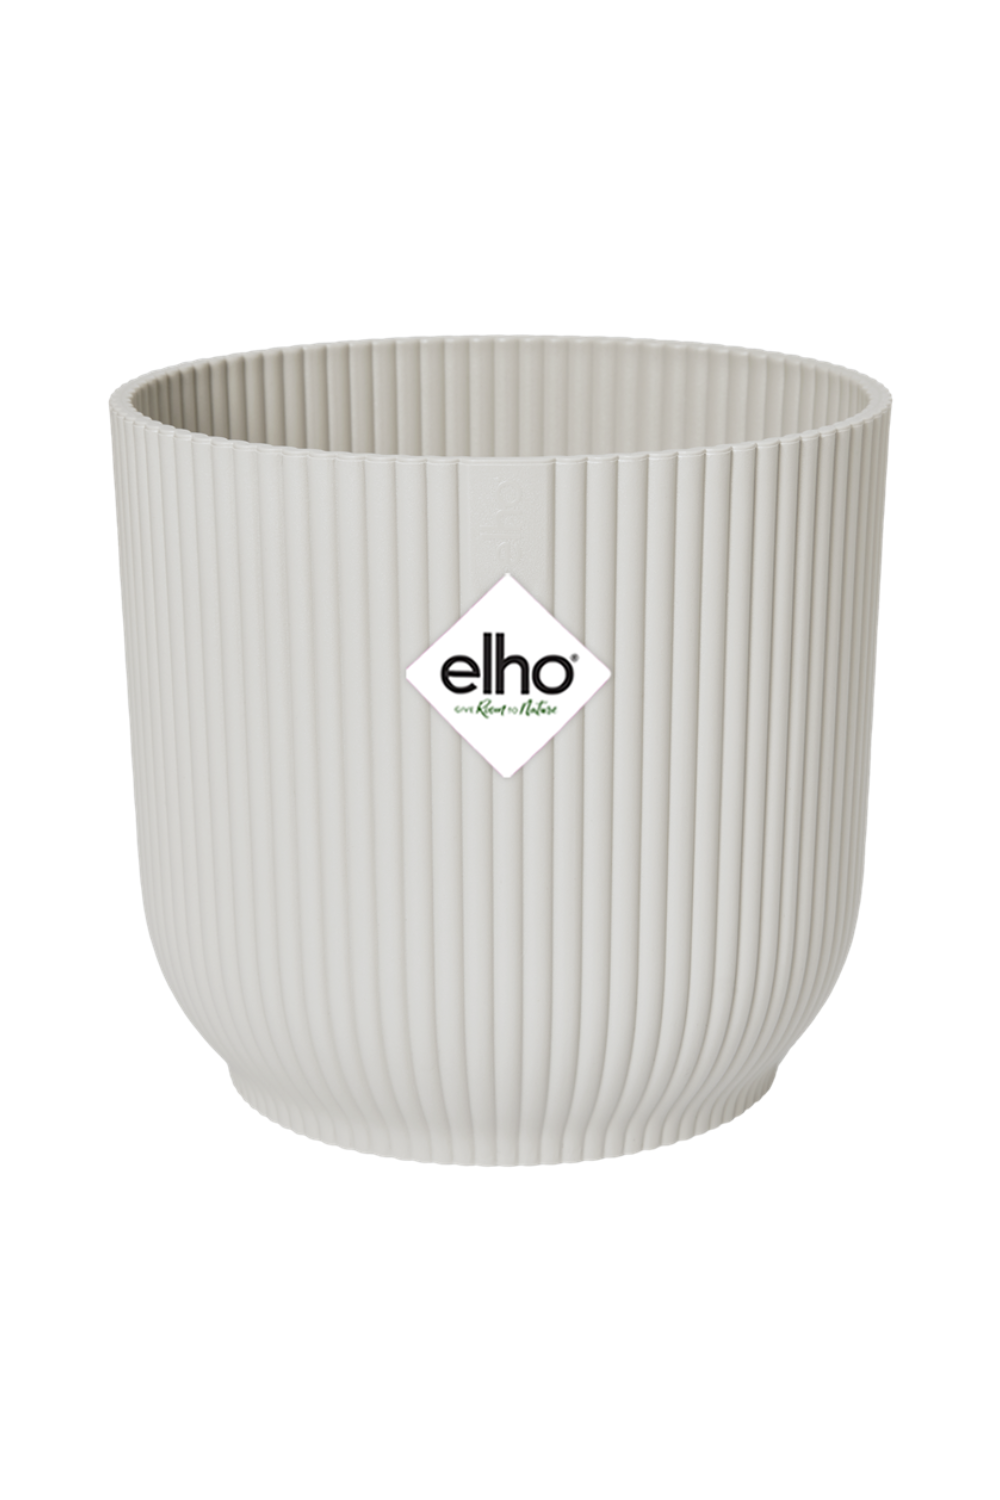 Blumentopf Elho Vibes Fold rund Silky White 18cm